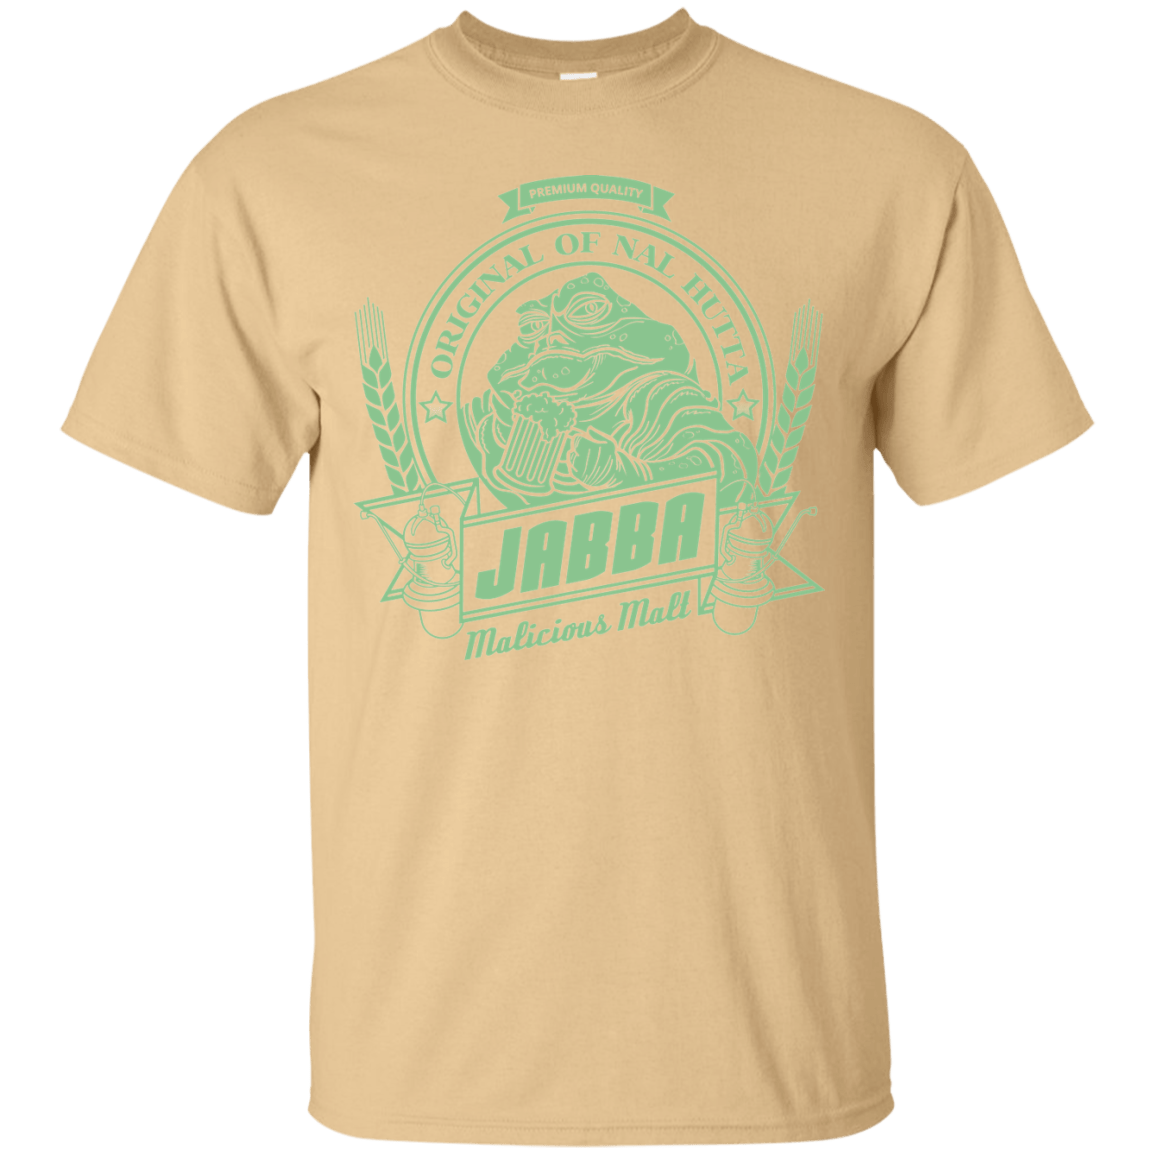 T-Shirts Vegas Gold / S Jabba Malt T-Shirt